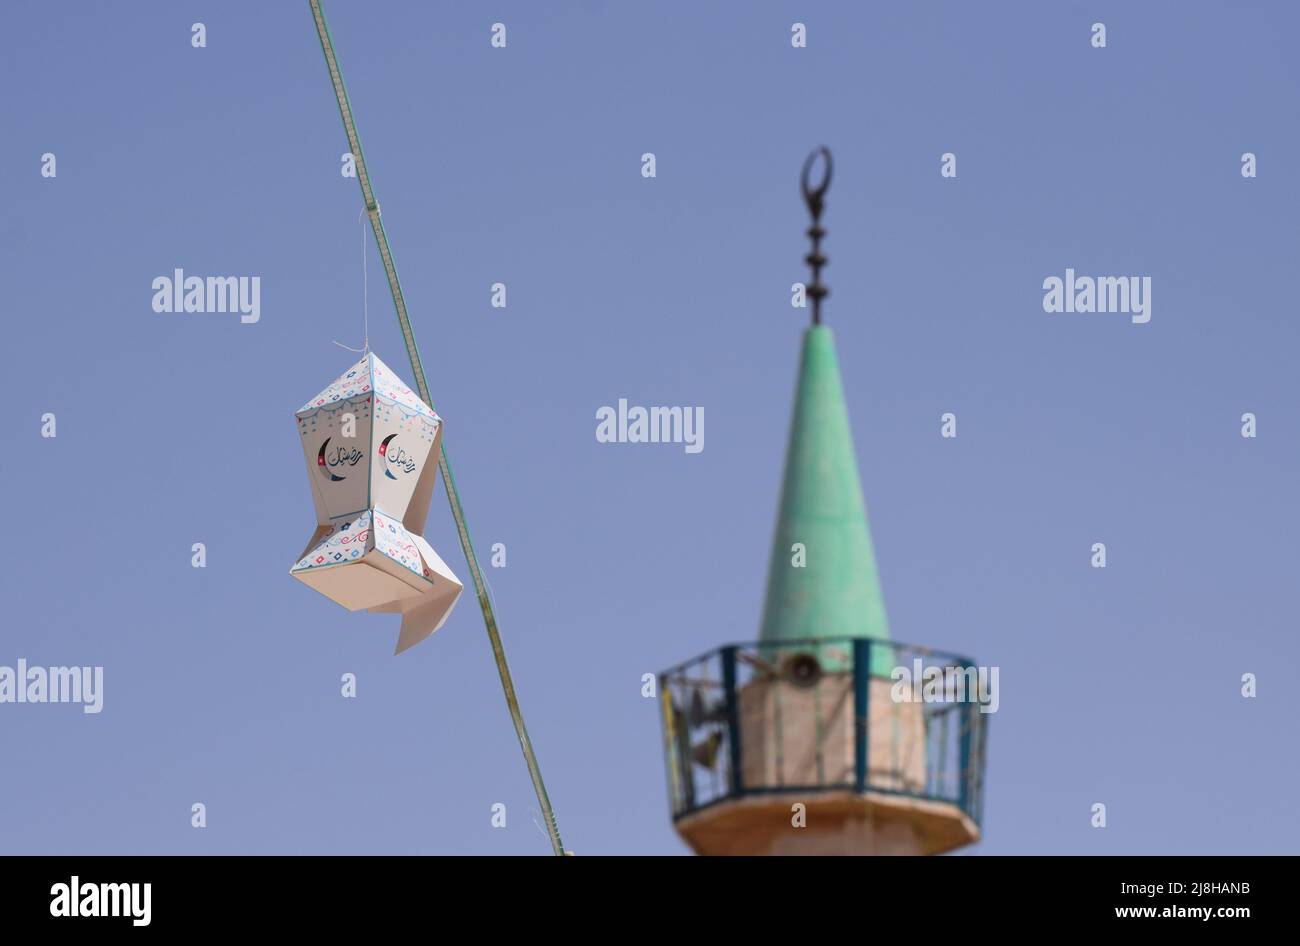 Lanterne de Ramadan suspendue décorations de rue avec le minaret d'une mosquée en arrière-plan contre un ciel bleu en Jordanie au Moyen-Orient Banque D'Images